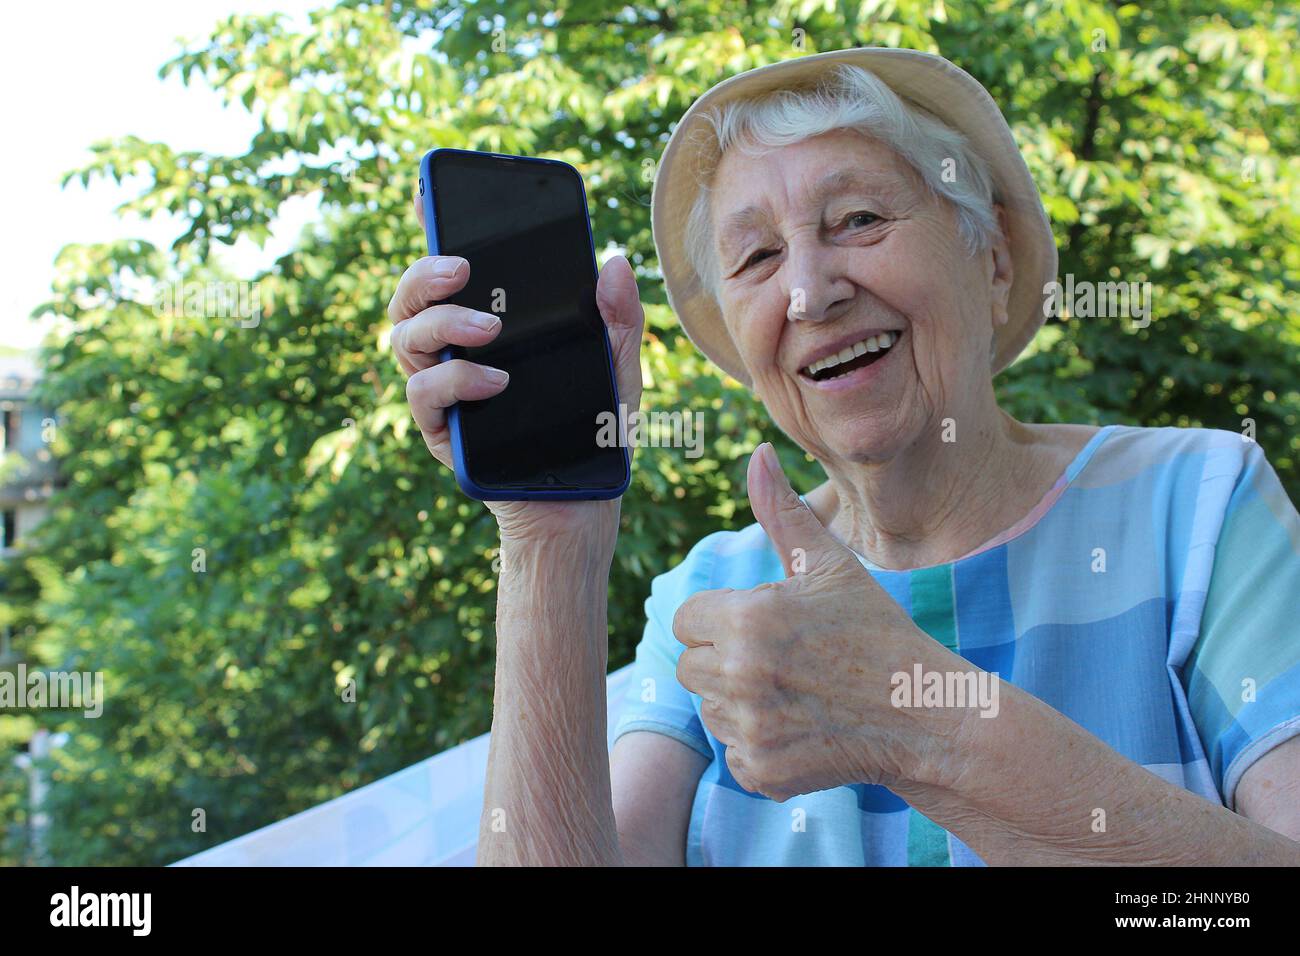 Joyful mature lady showing a phone isolated on nature background Stock Photo